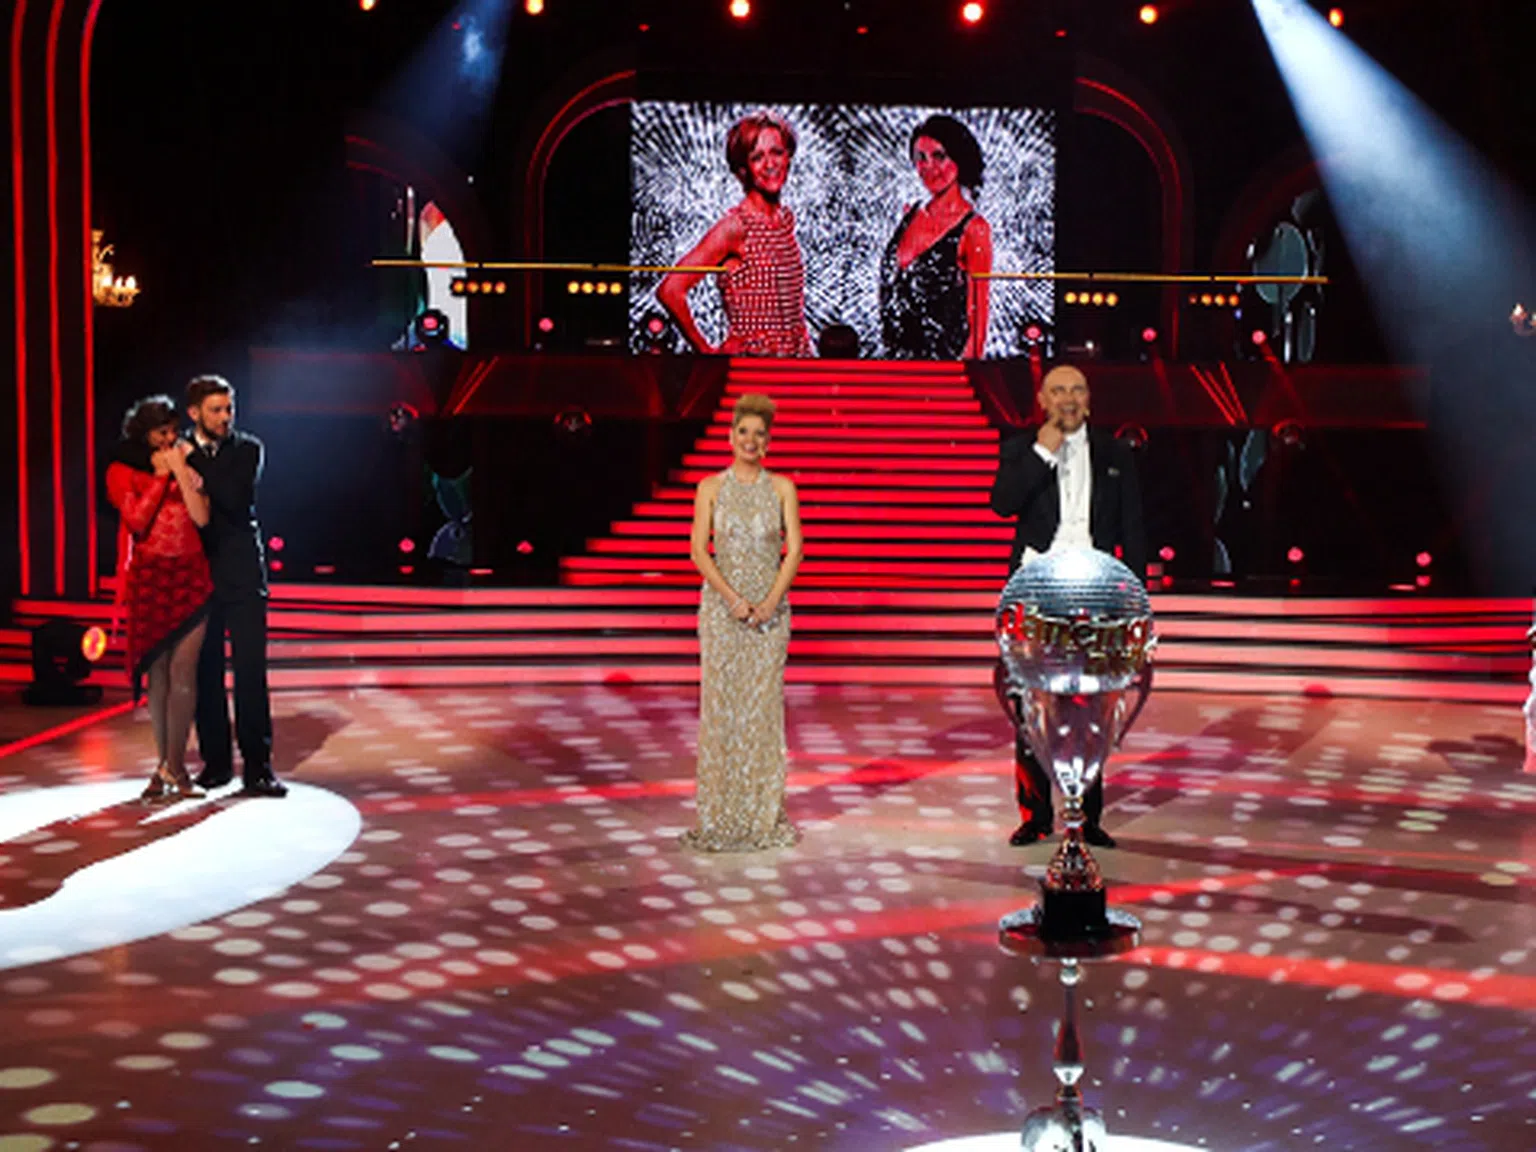 Албена Денкова е победителят в Dancing Stars 2014